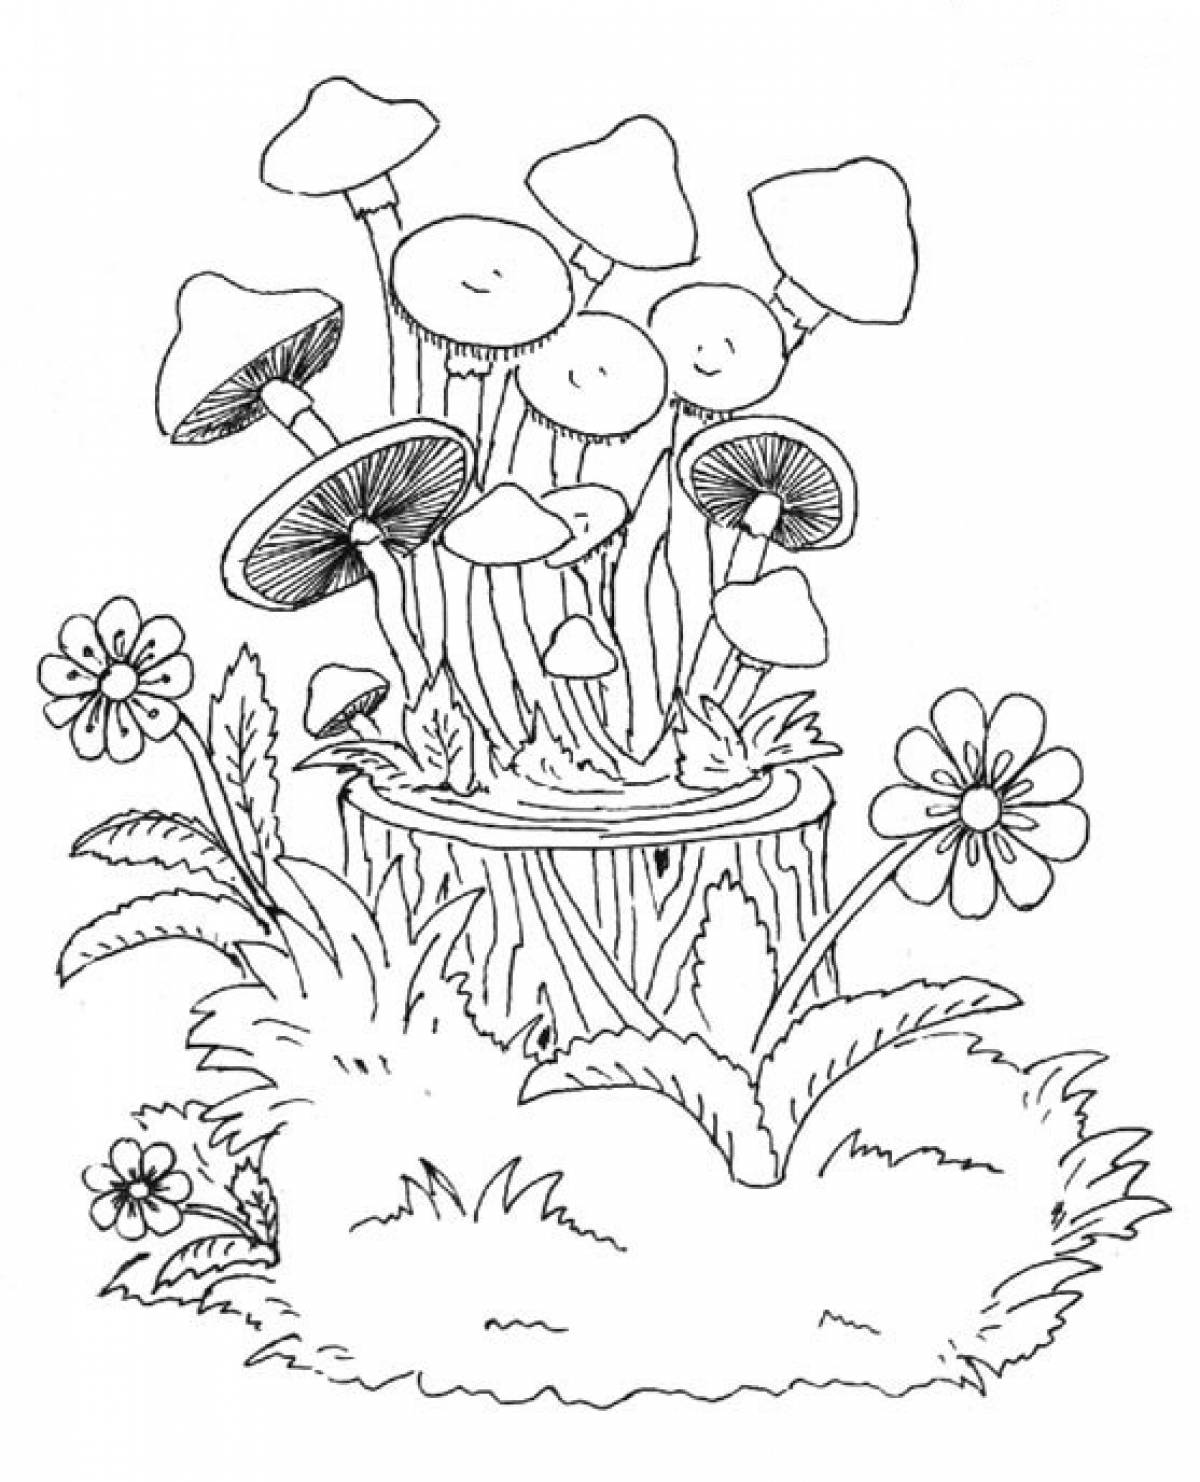 Honey mushrooms on a stump